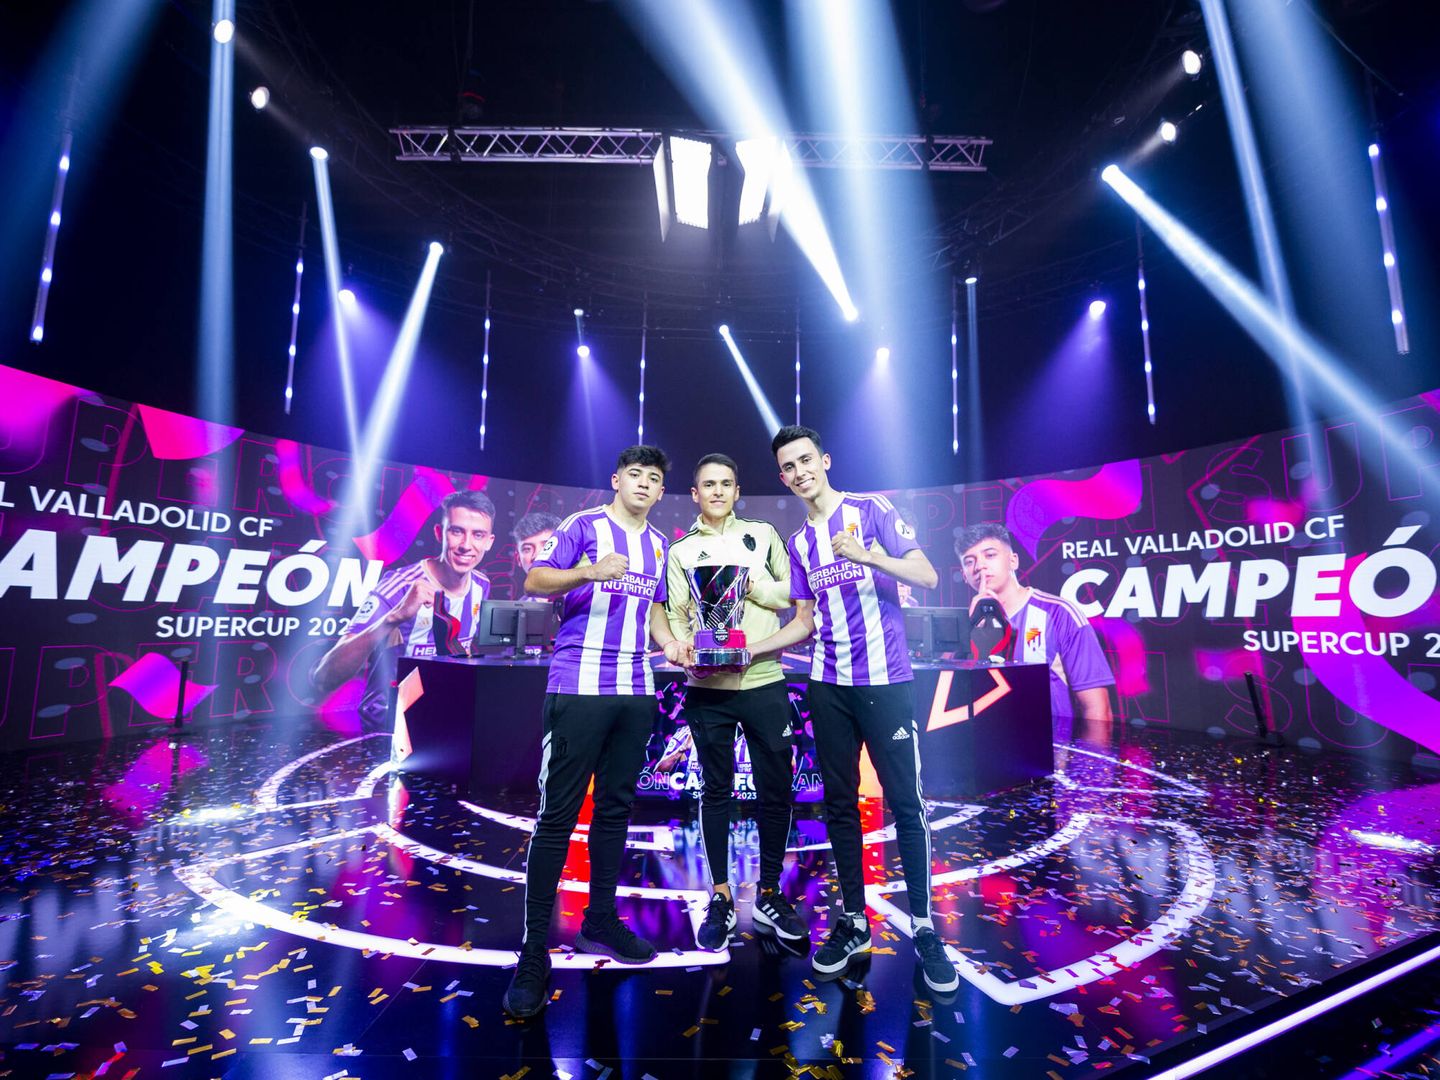  El Real Valladolid CF fue el campeón en la competición eLaLiga Santander SuperCup. (Cortesía)